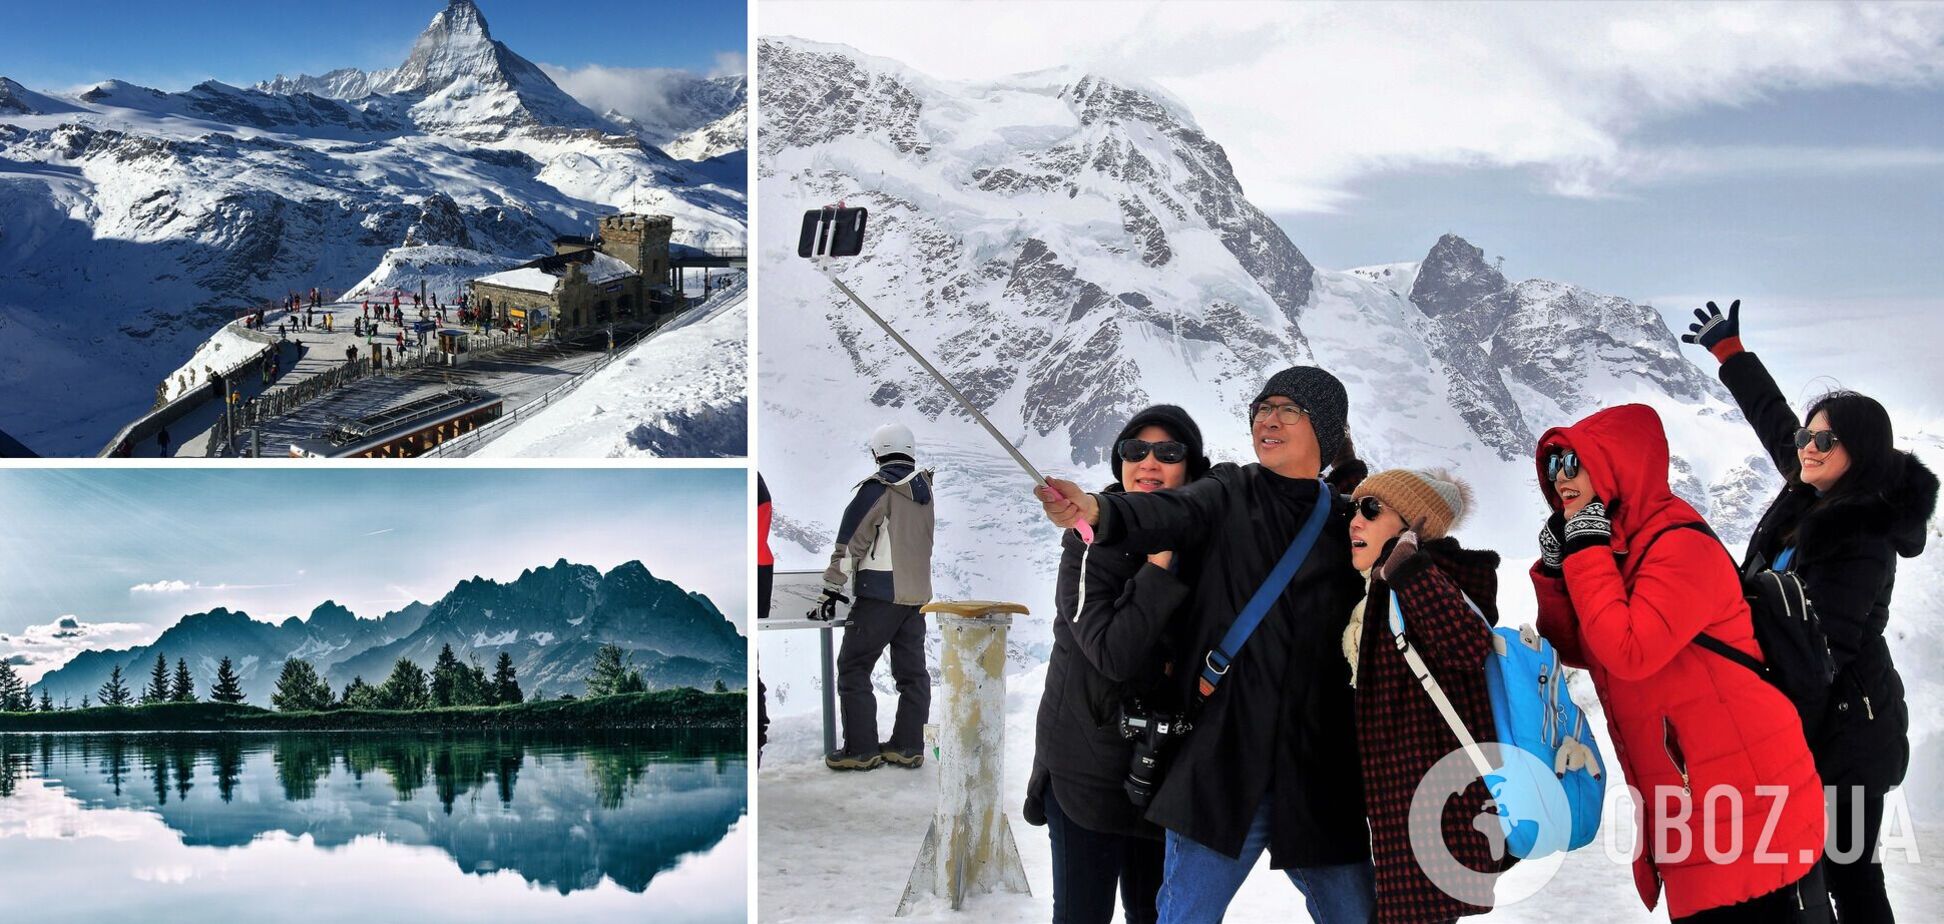 Незважаючи на пандемію, у Європі можна провести зимову відпустку у горах